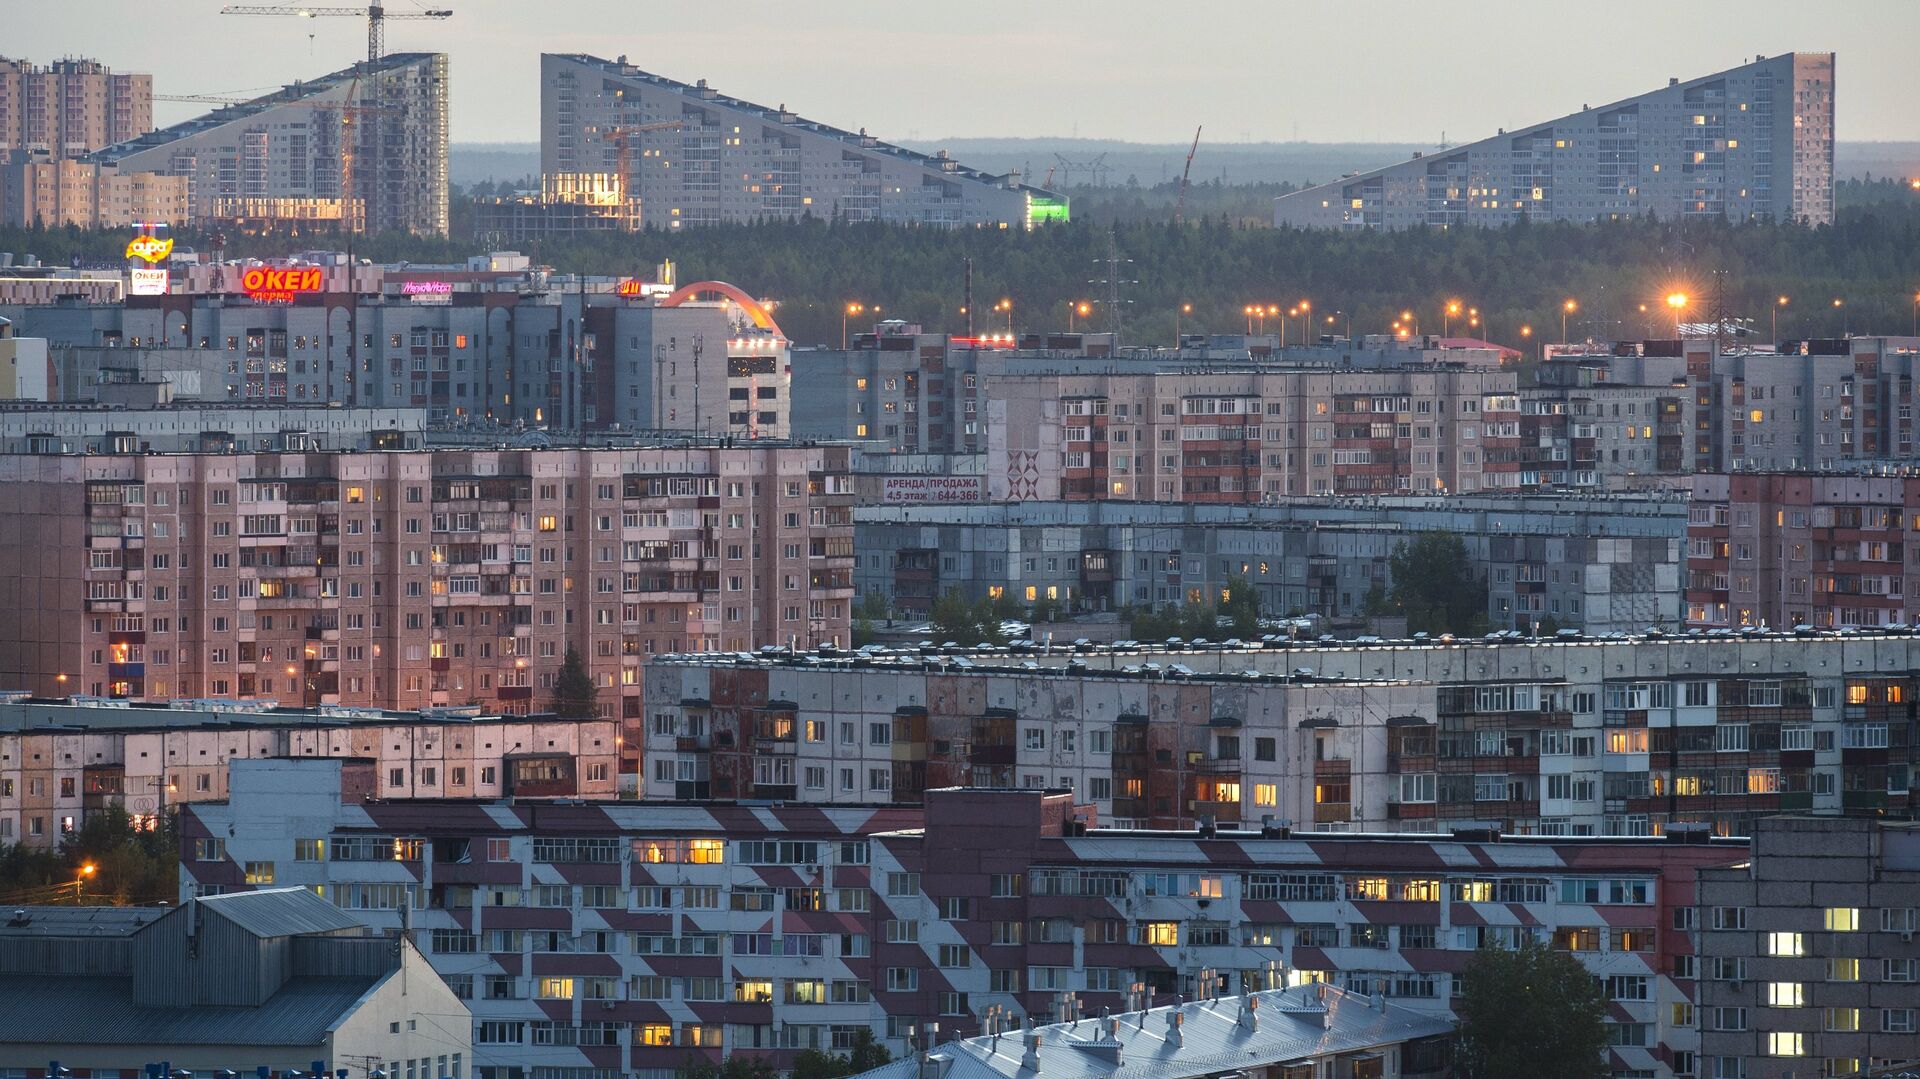 Власти объяснили высокое место Сургута в рейтинге комфортных городов - Недвижимость РИА Новости, 24.02.2021